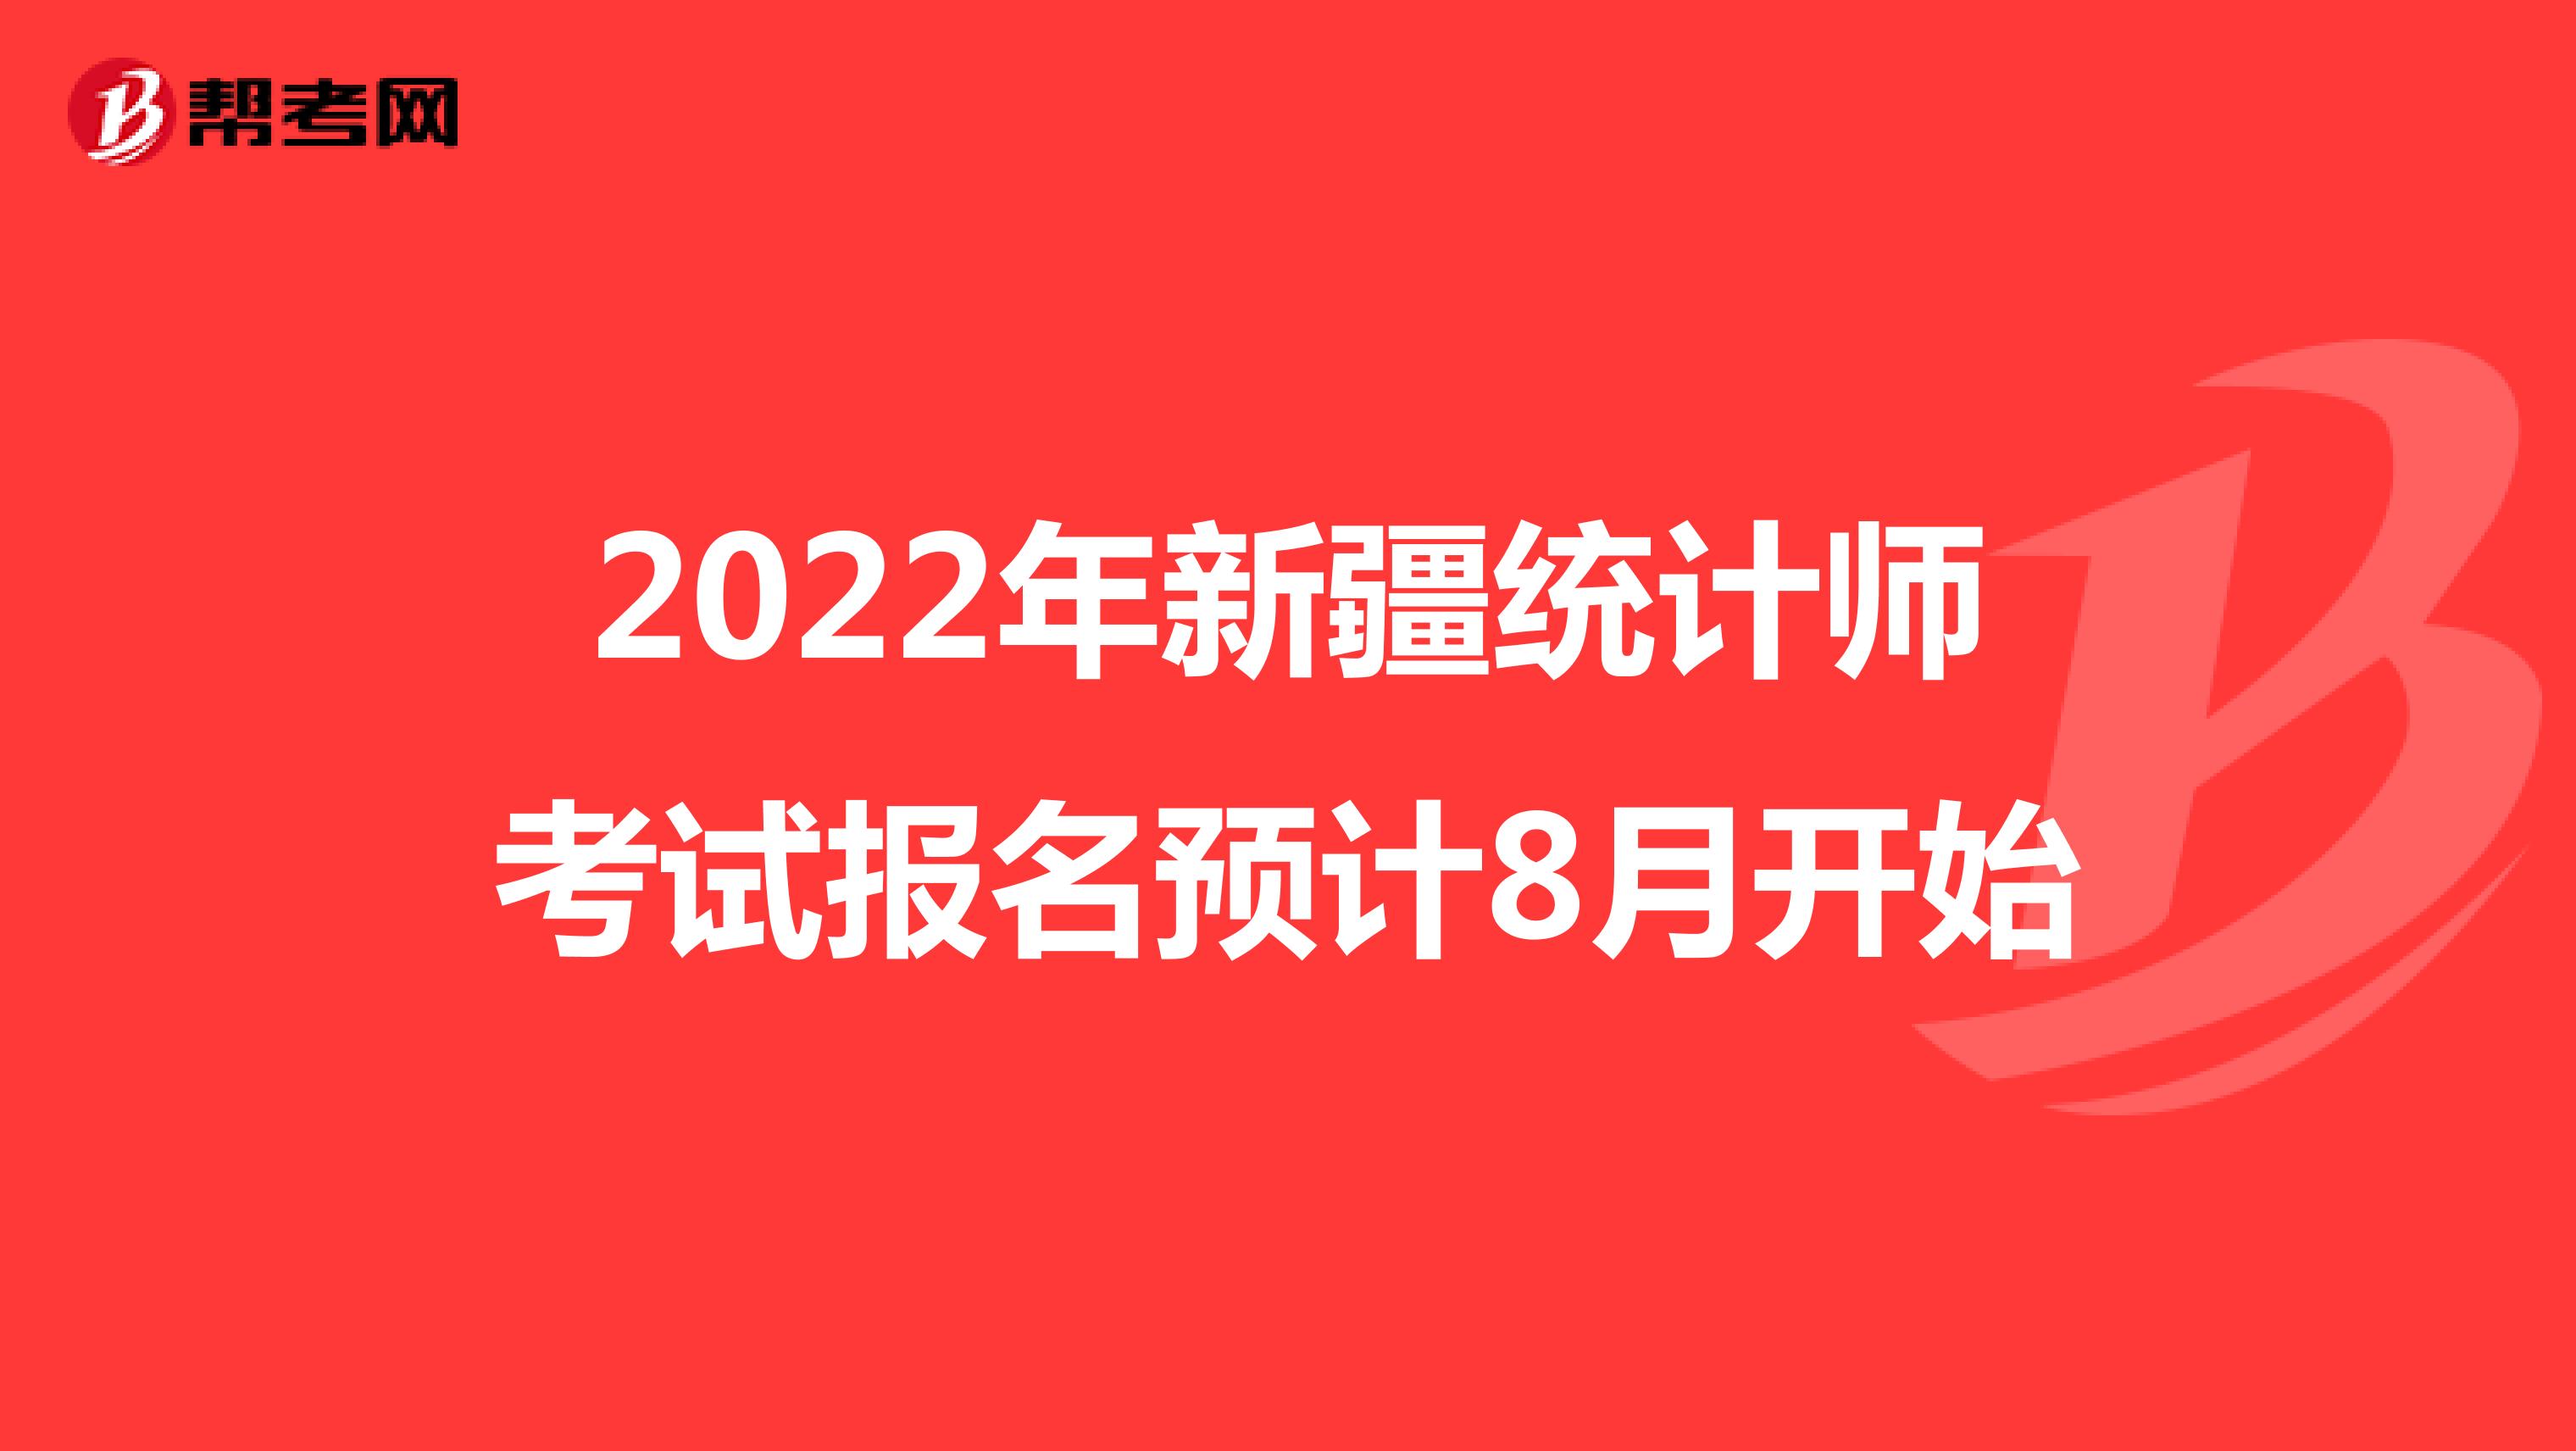 2022年新疆统计师考试报名预计8月开始